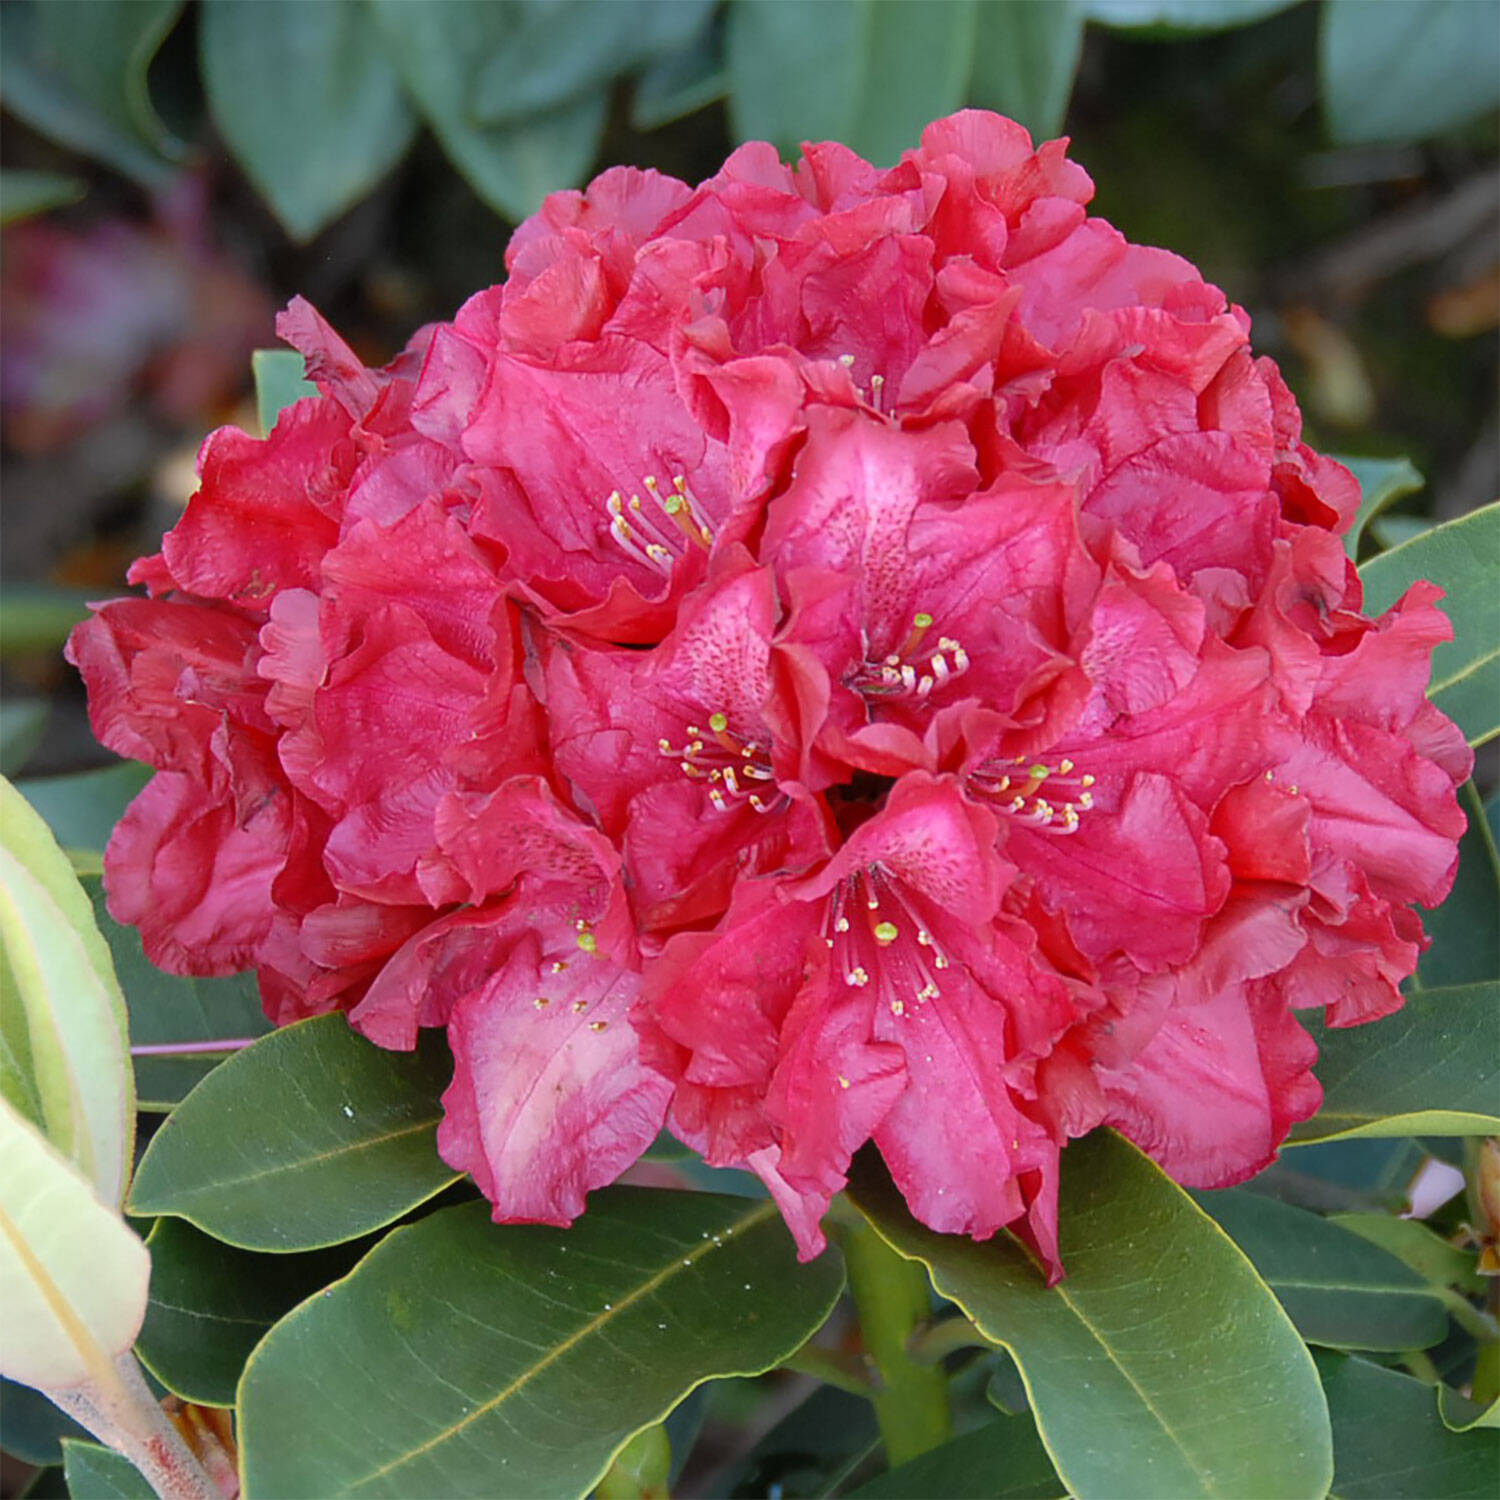 Kategorie <b>Hecken </b> - Rhododendron 'Roter Korsar' - Rhododendron Hybride 'Roter Korsar'